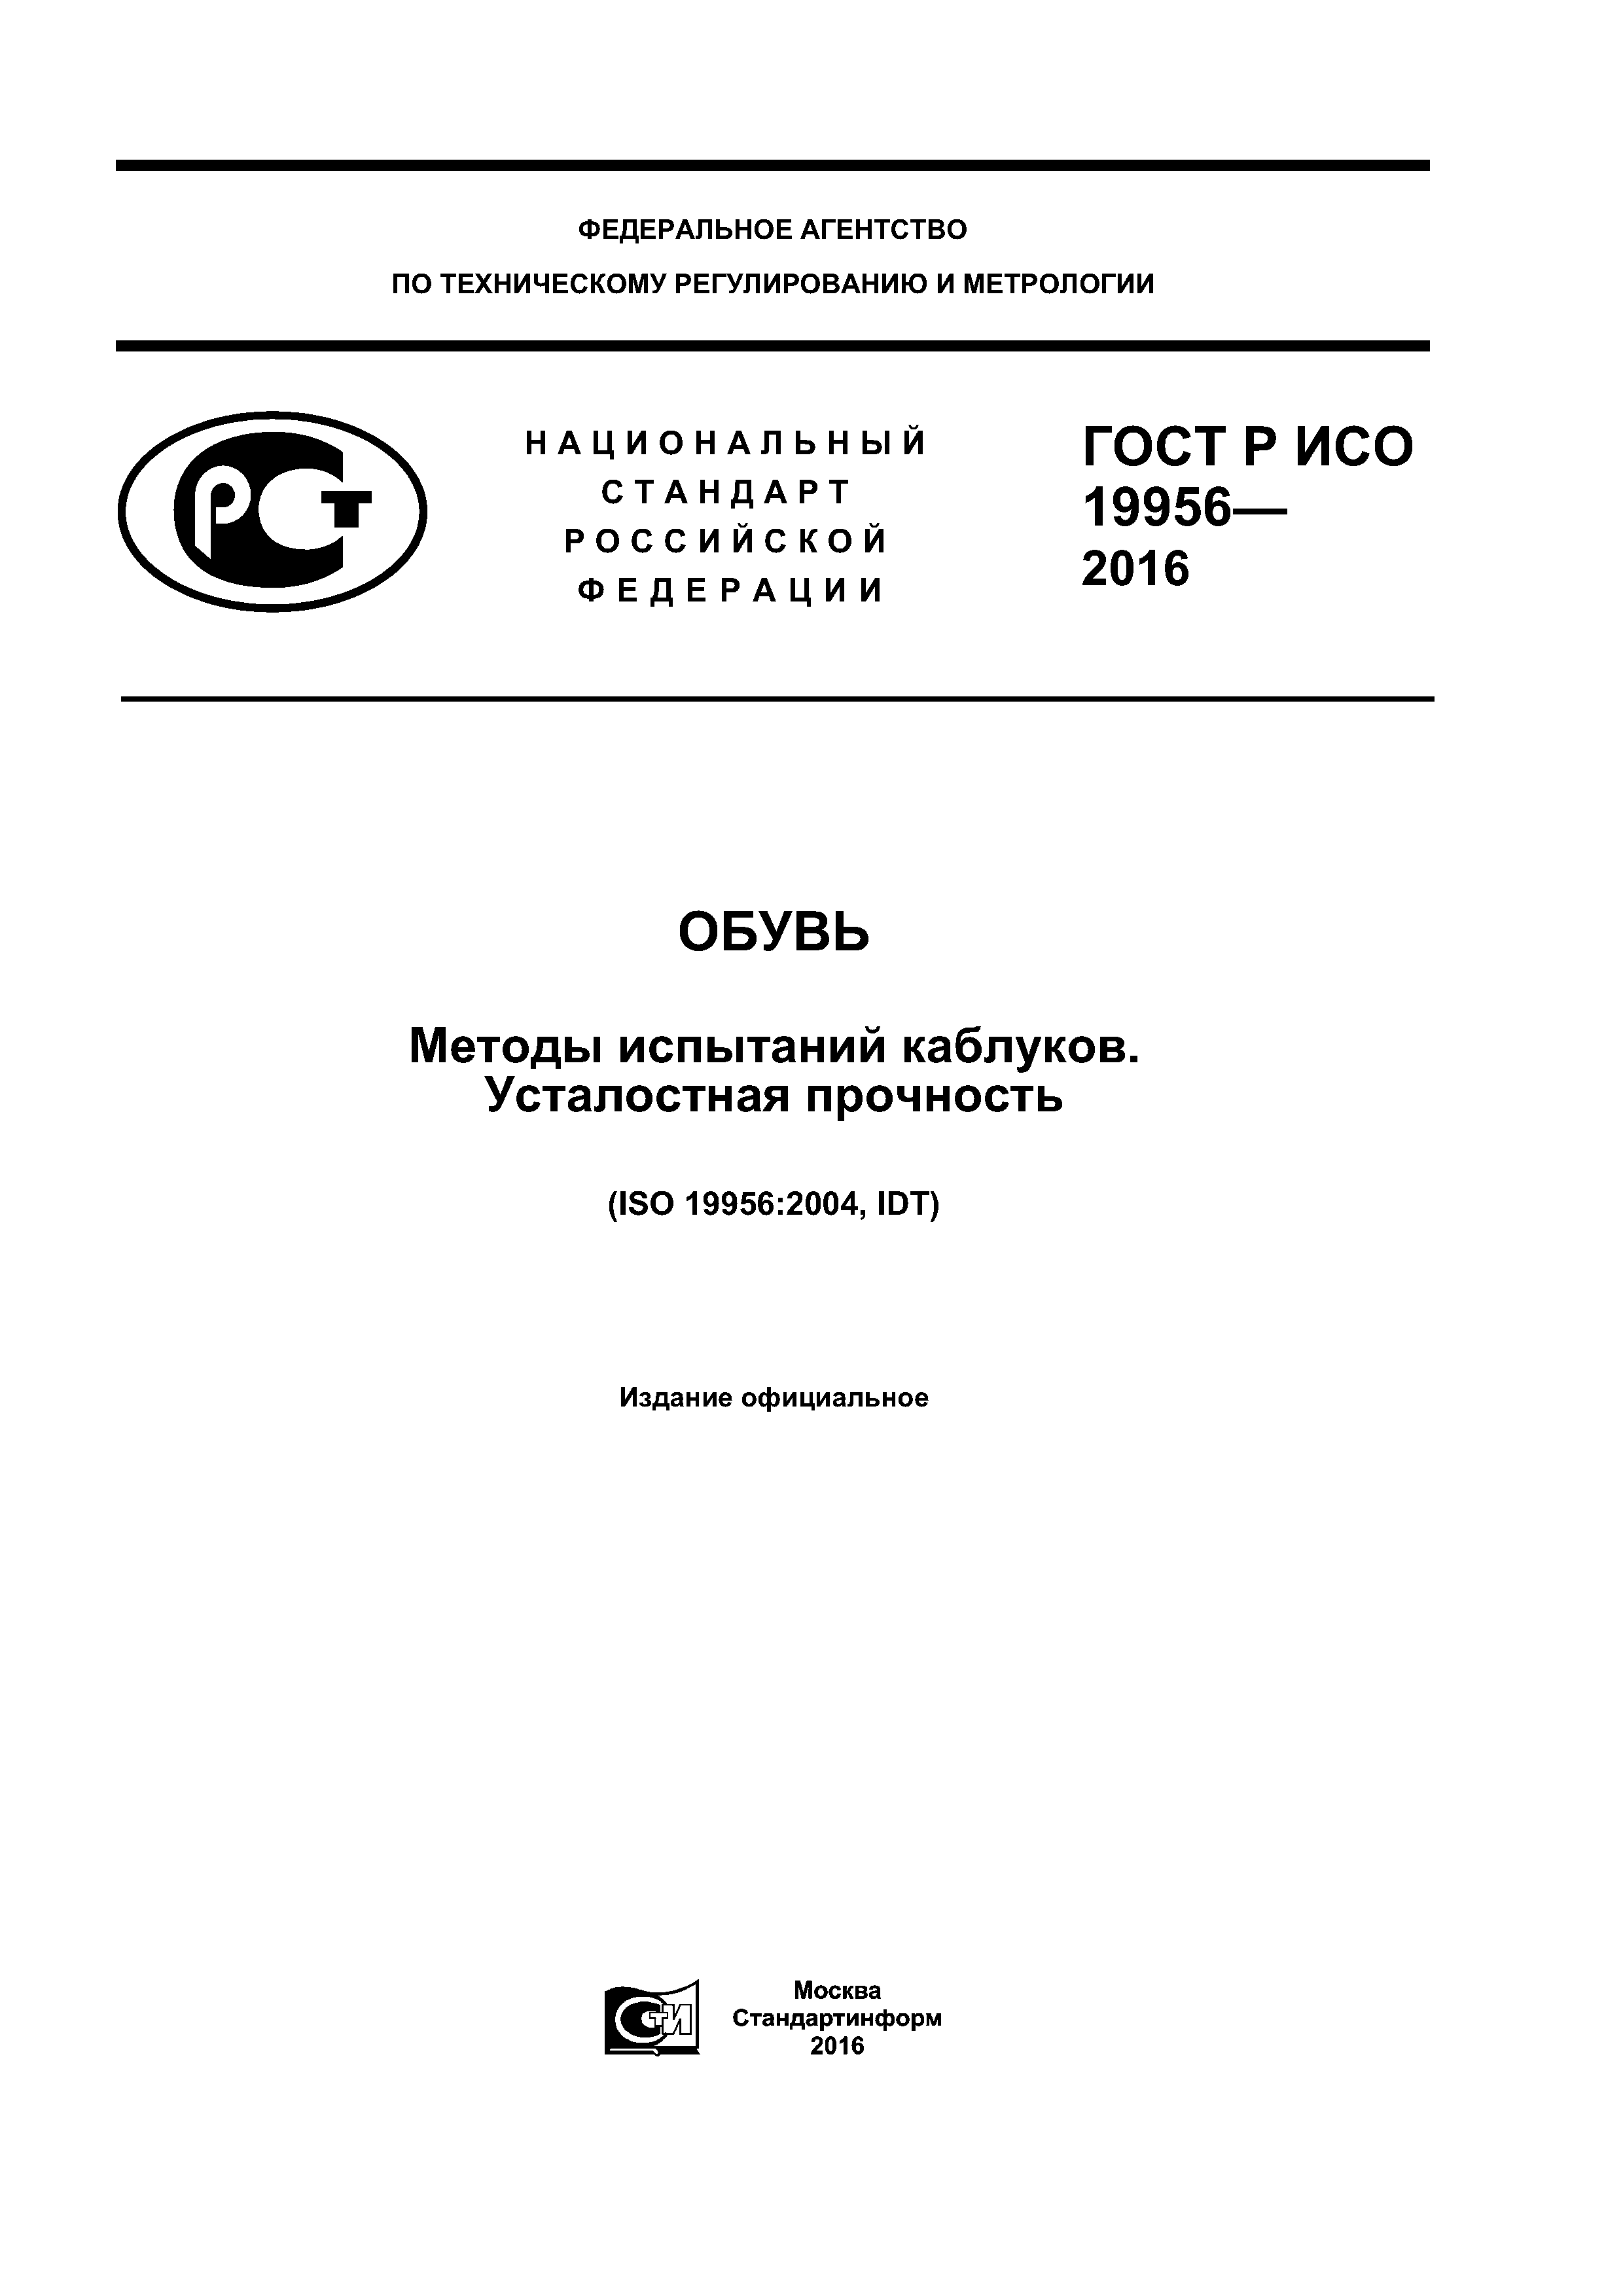 ГОСТ Р ИСО 19956-2016